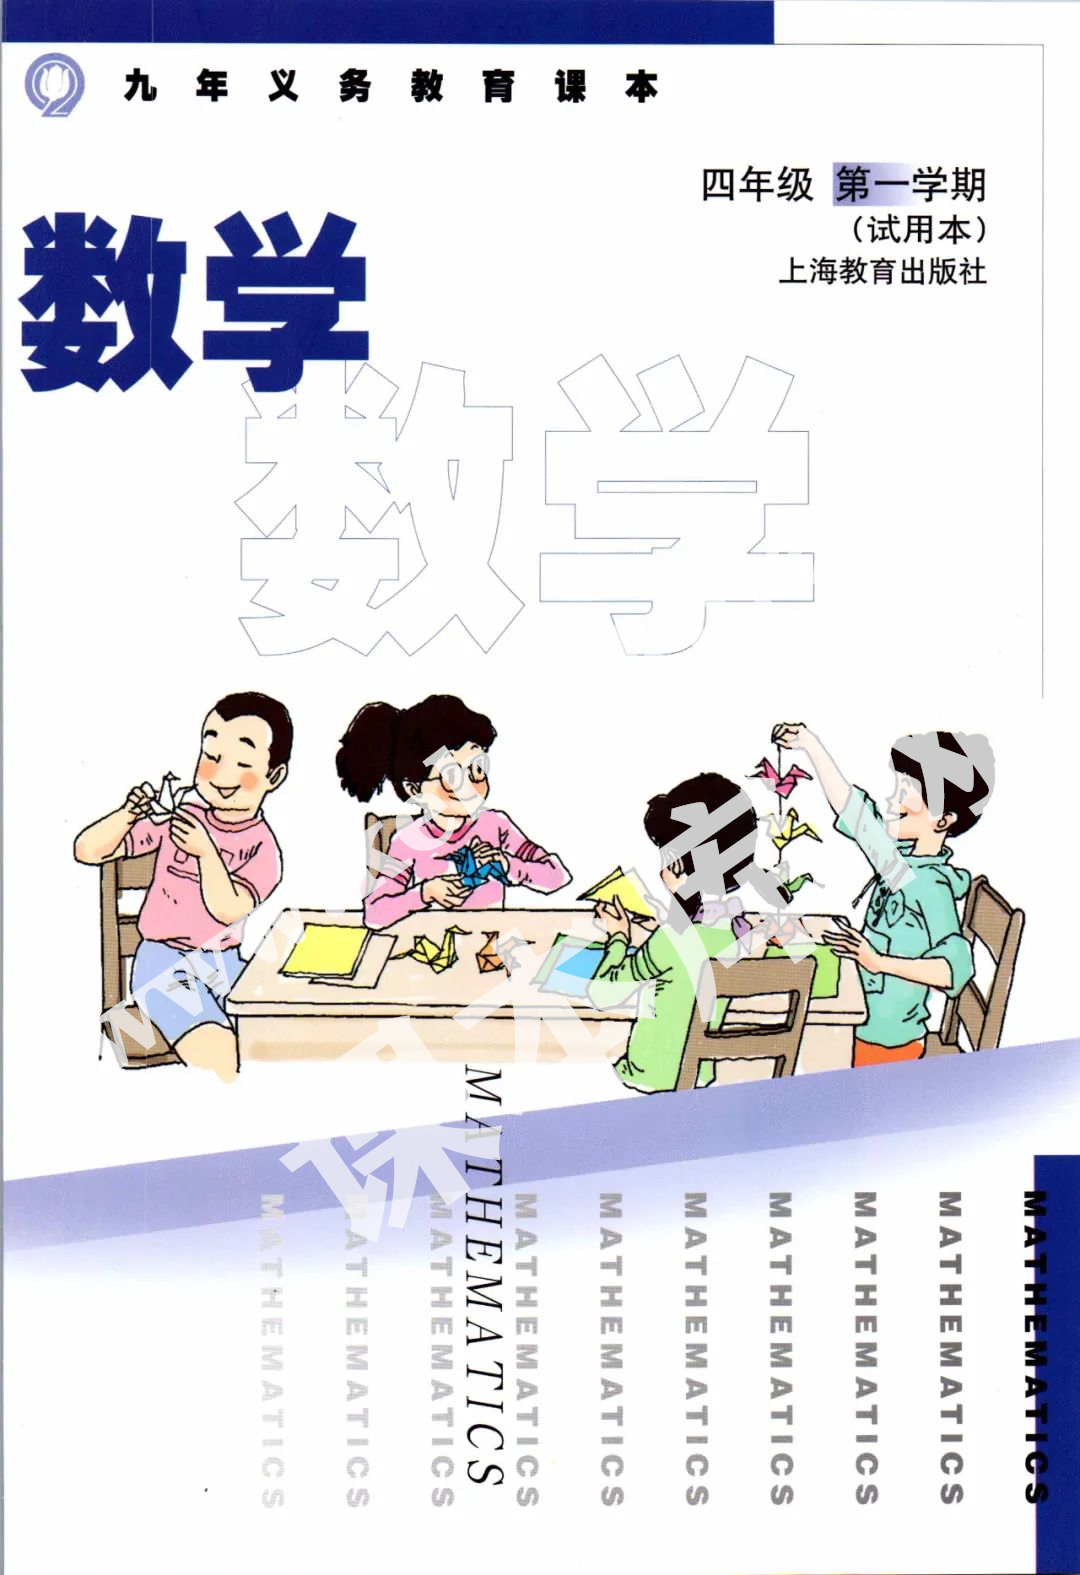 上海教育出版社九年義務教育教科書四年級數學上冊電子課本